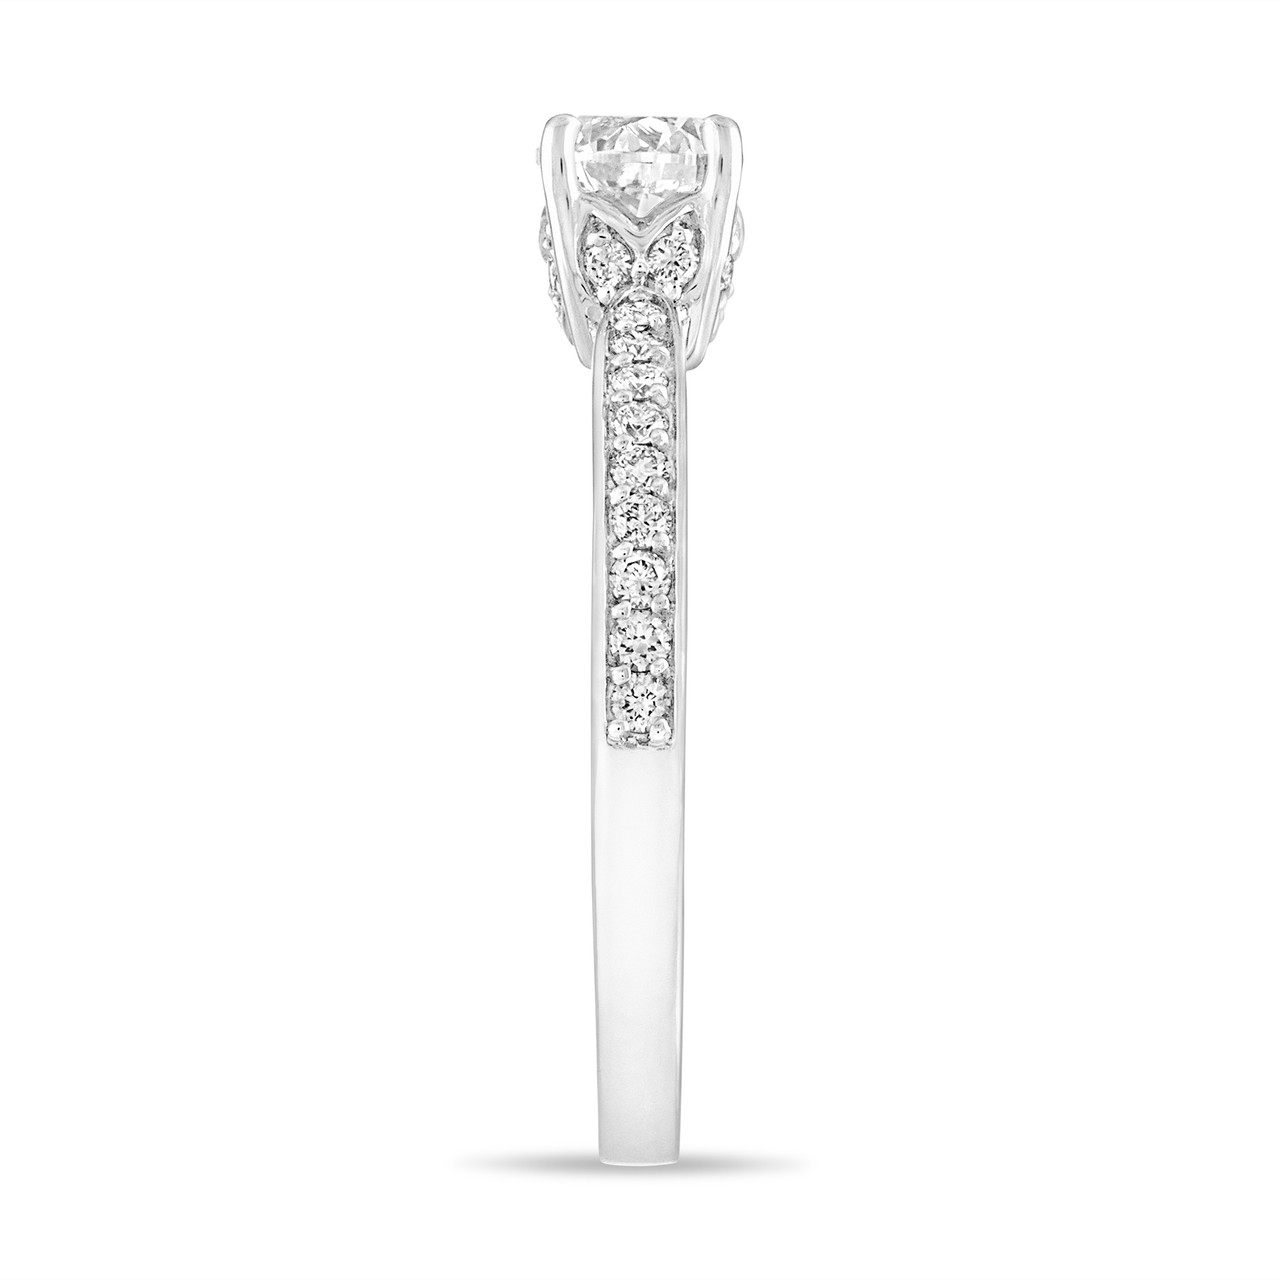 Platinum Diamond Engagement Ring GIA Certified 0.74 Carat Unique Handmade